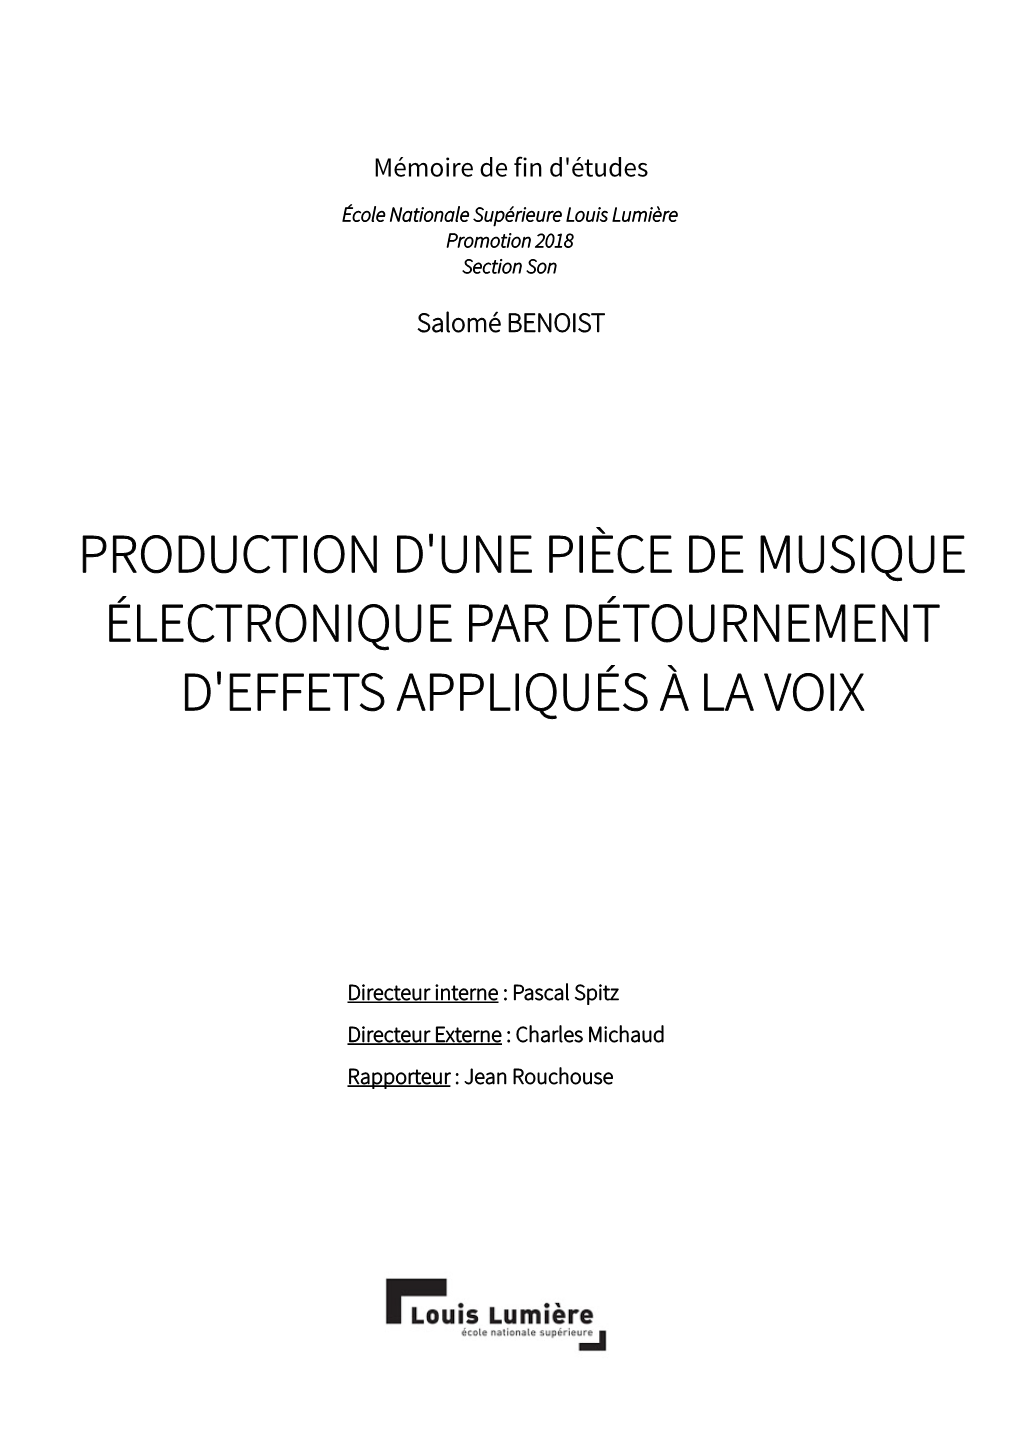 Production D'une Pièce De Musique Électronique Par Détournement D'effets Appliqués À La Voix